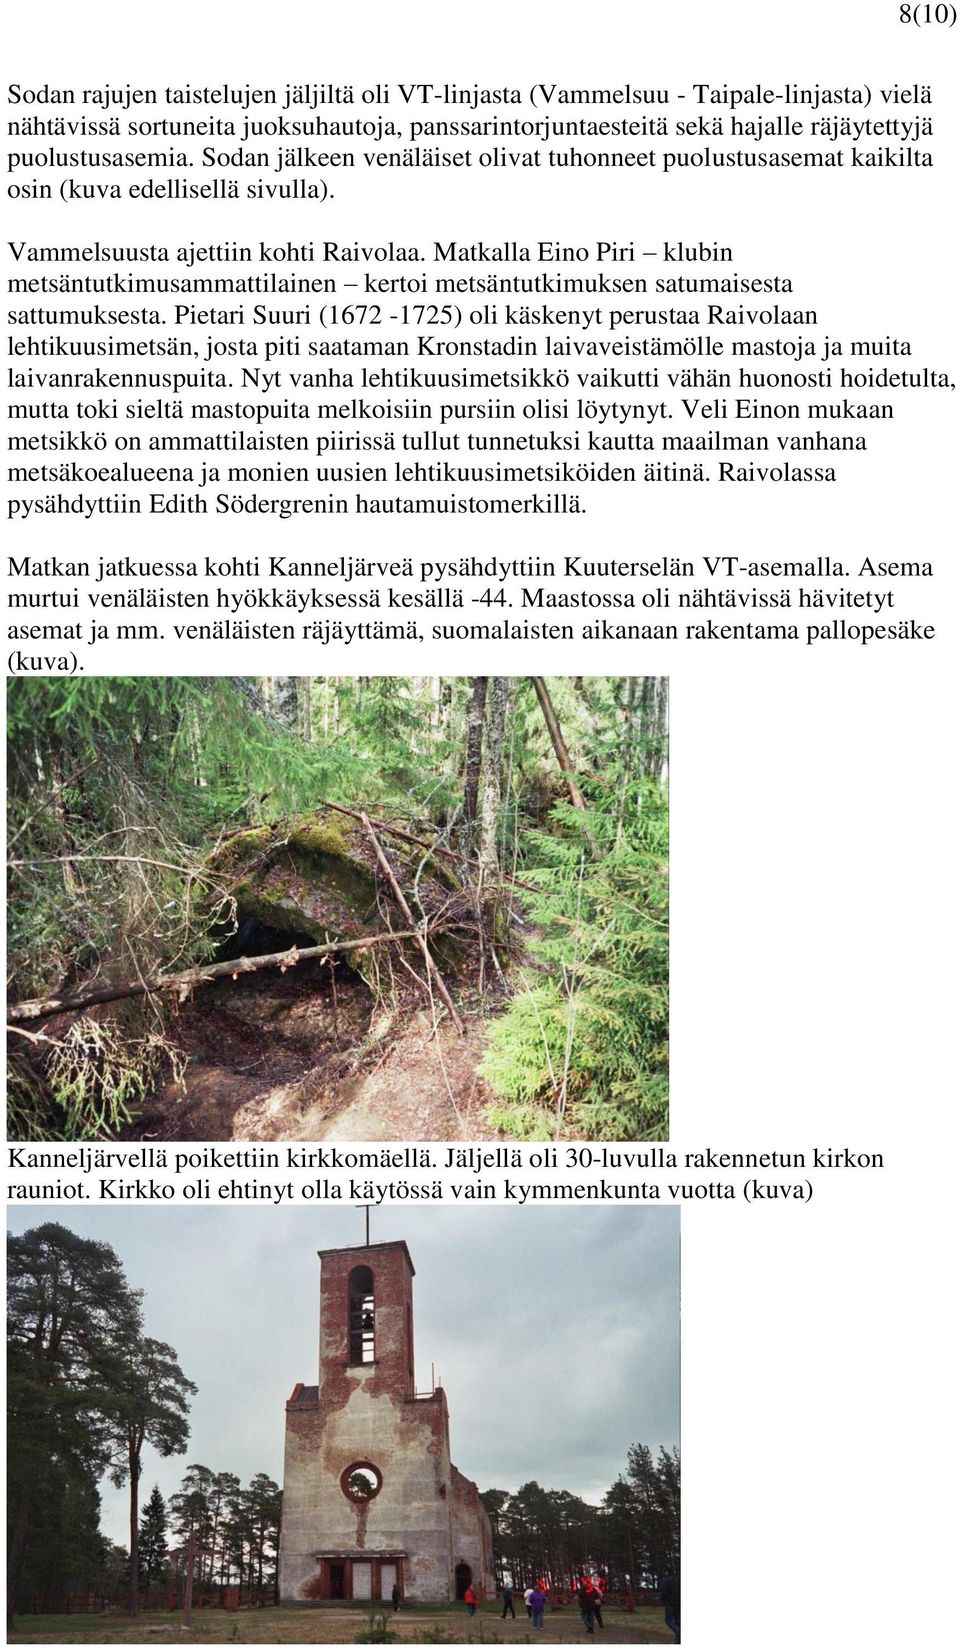 Matkalla Eino Piri klubin metsäntutkimusammattilainen kertoi metsäntutkimuksen satumaisesta sattumuksesta.